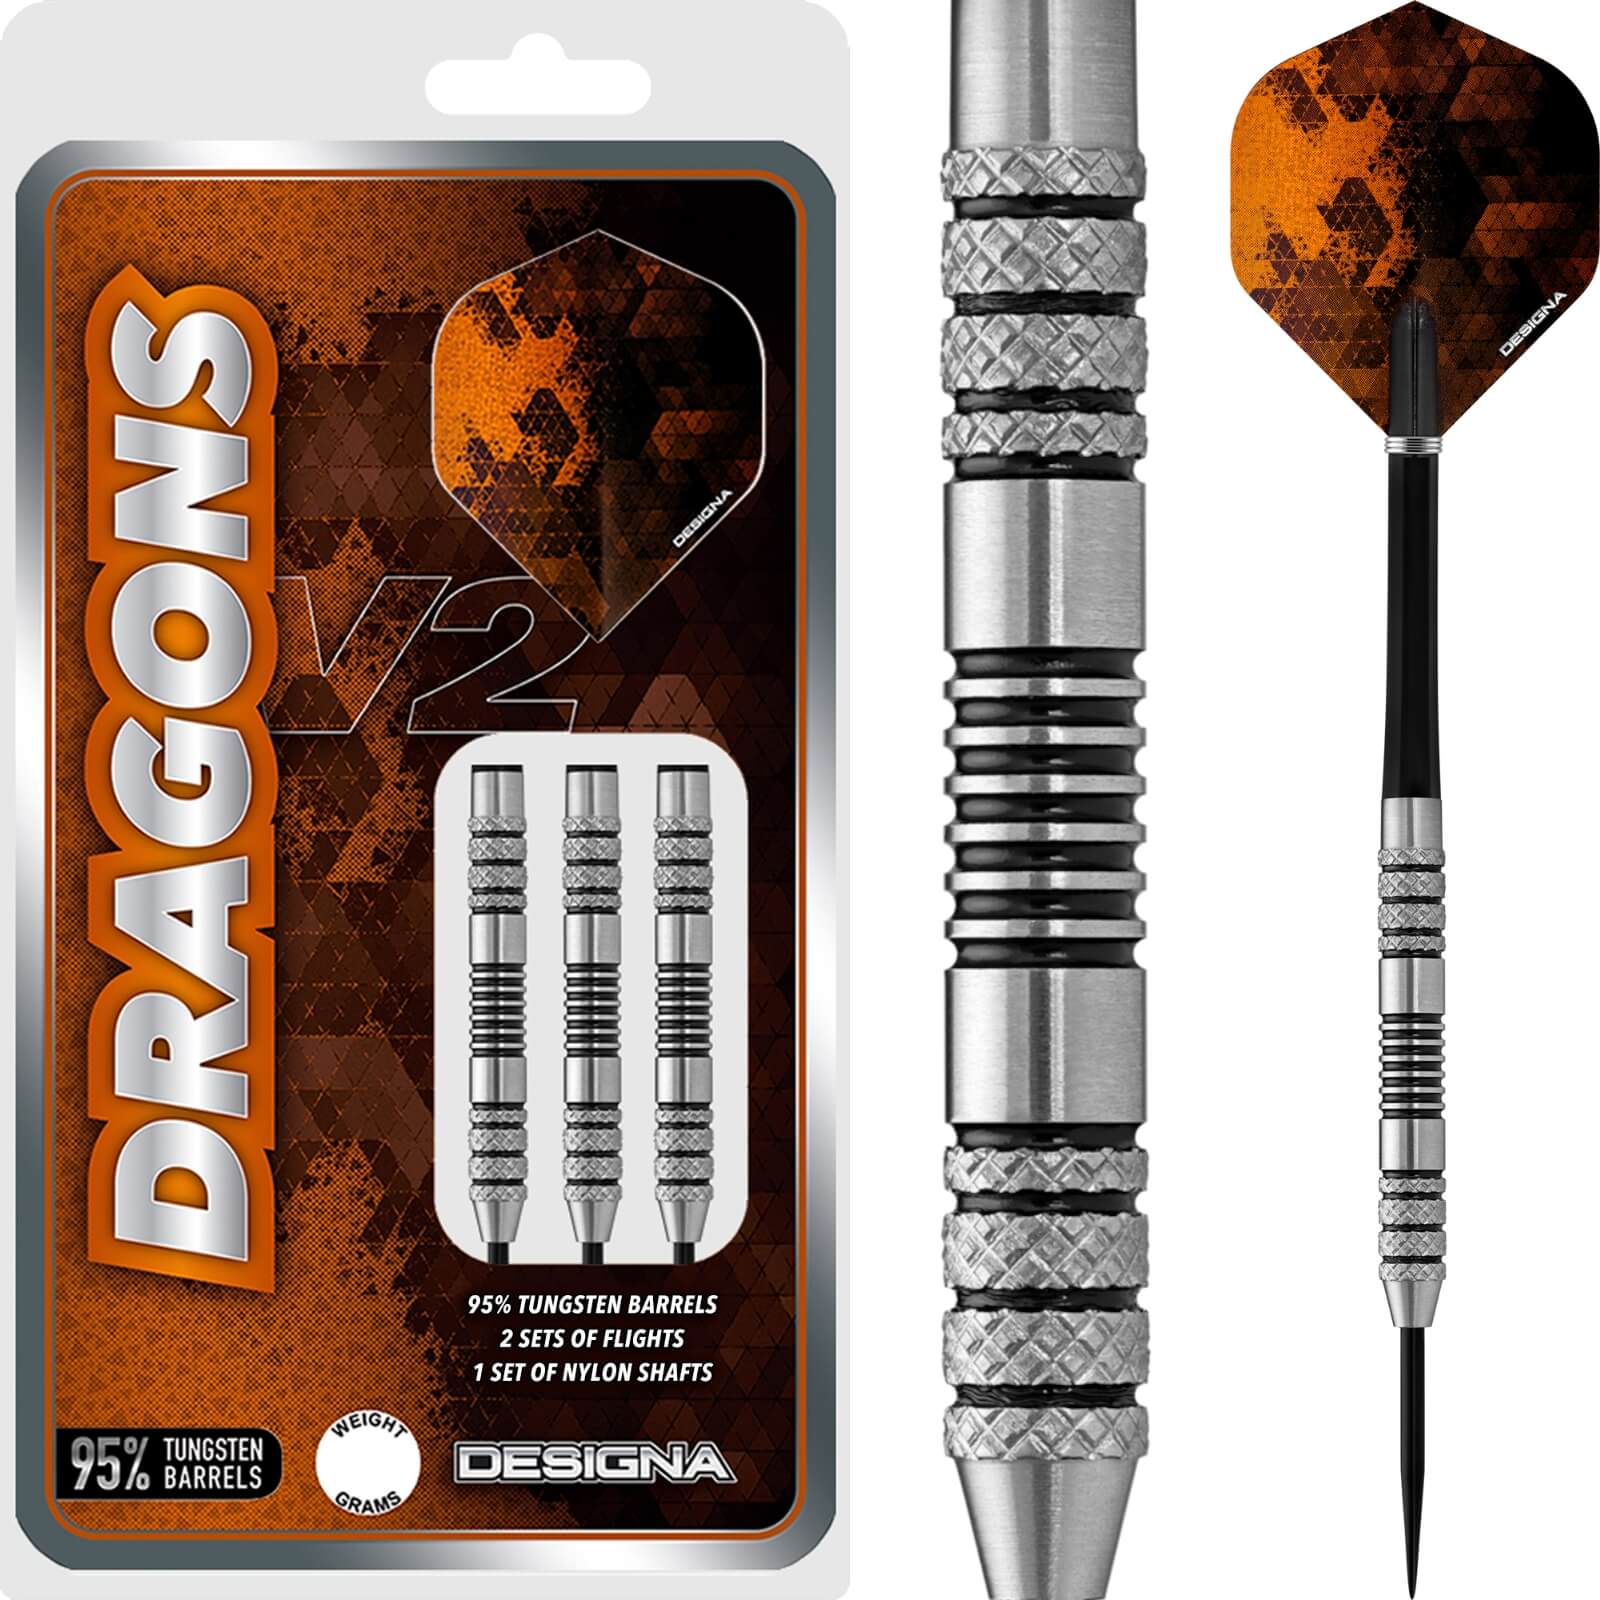 Darts - Designa - Dragons 95 V2 M3 Darts - Steel Tip - 95% Tungsten - 22g 24g 26g 28g 